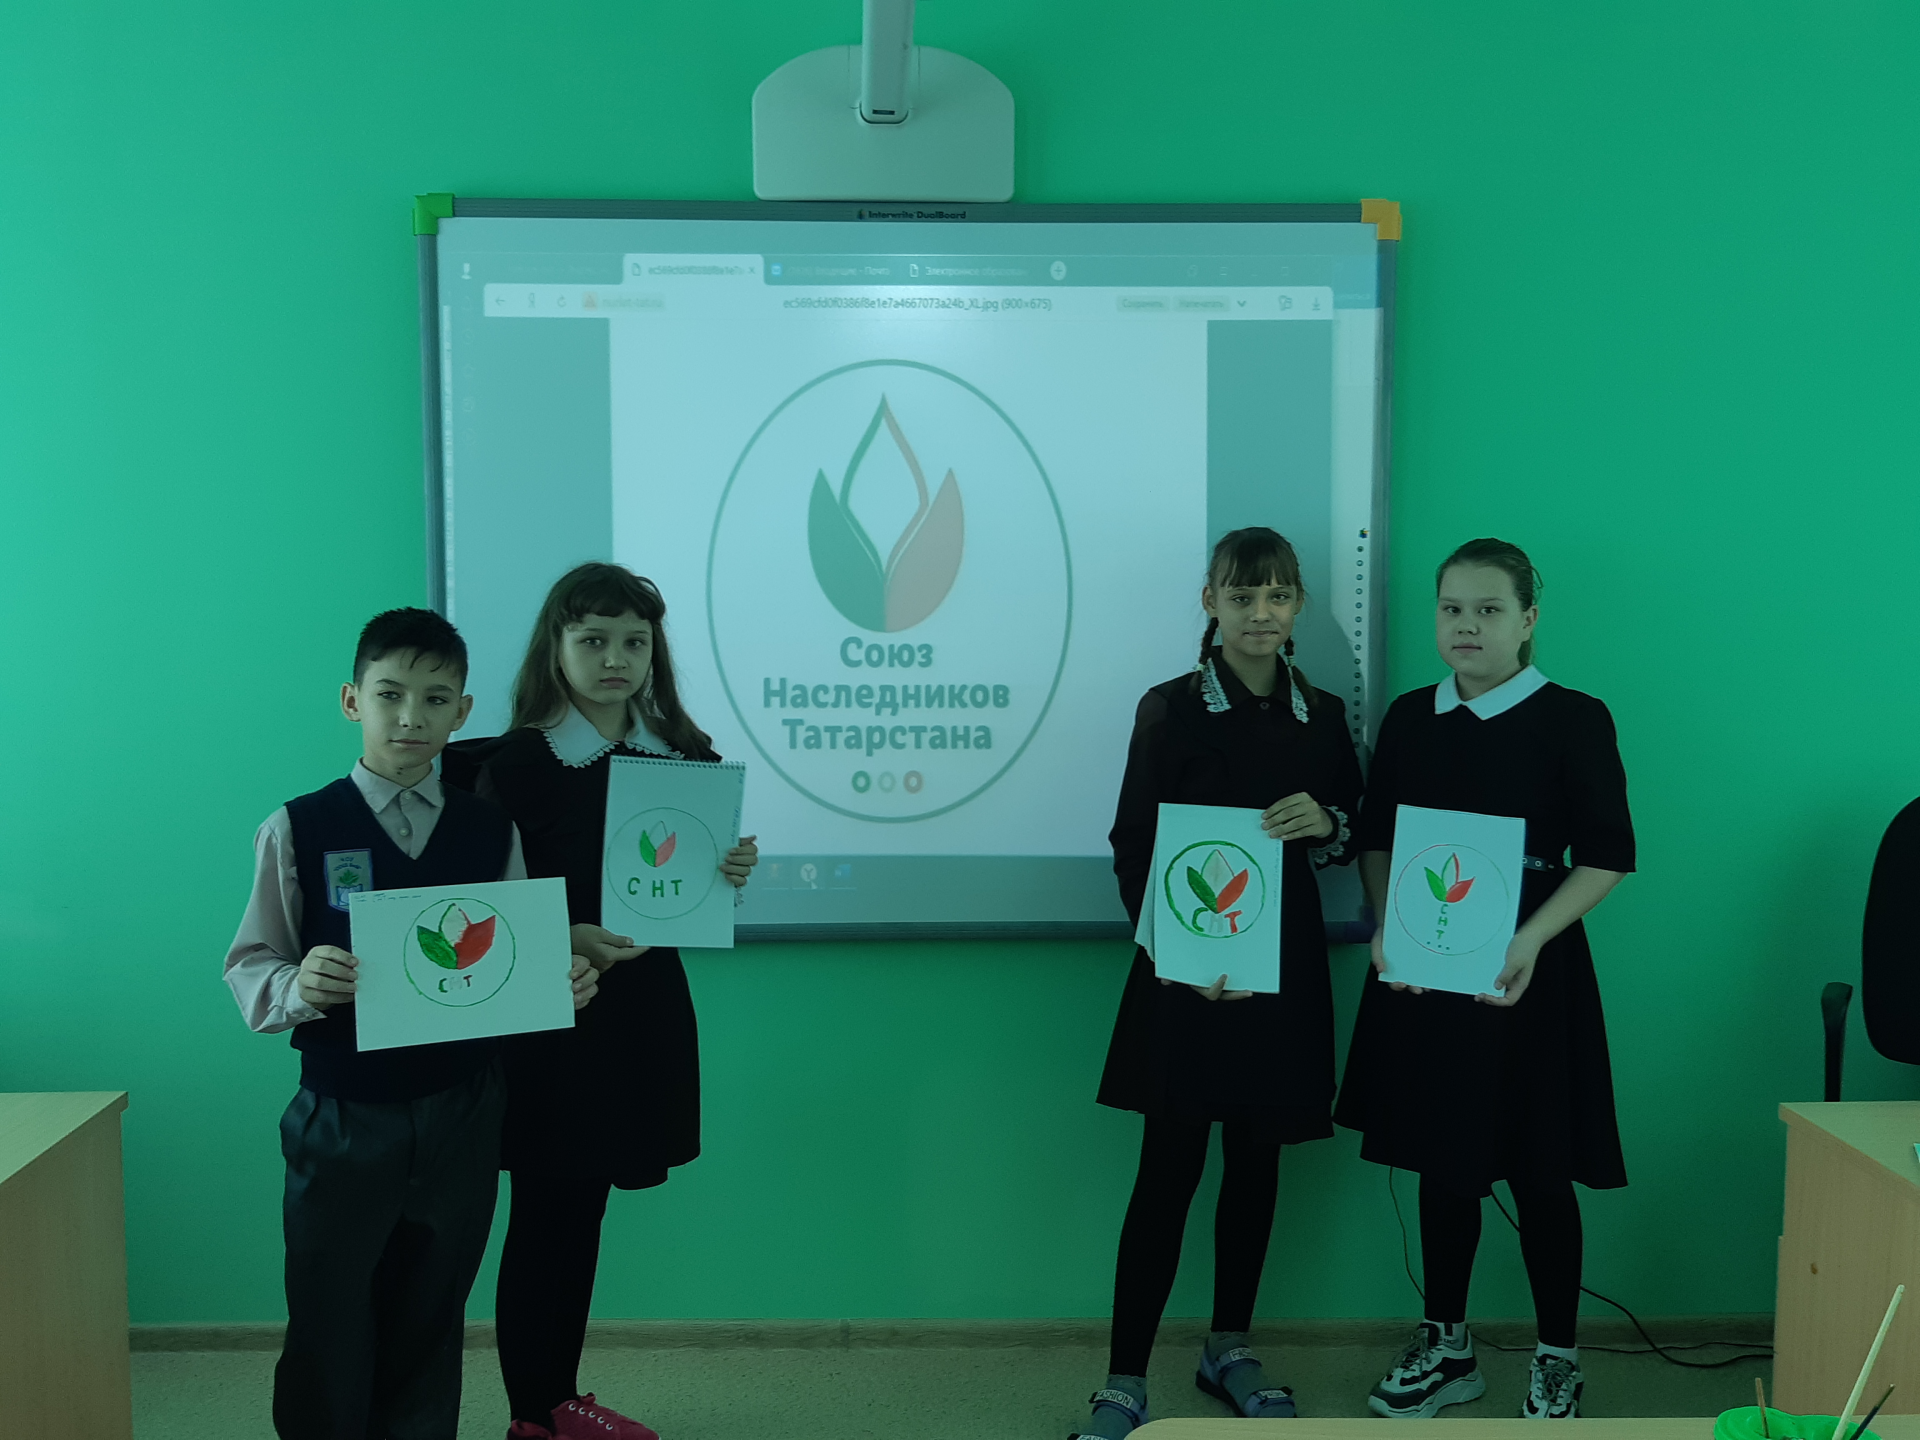 В Азалаковской школе отметили день рождения общественной организации «Союз наследников Татарстана»